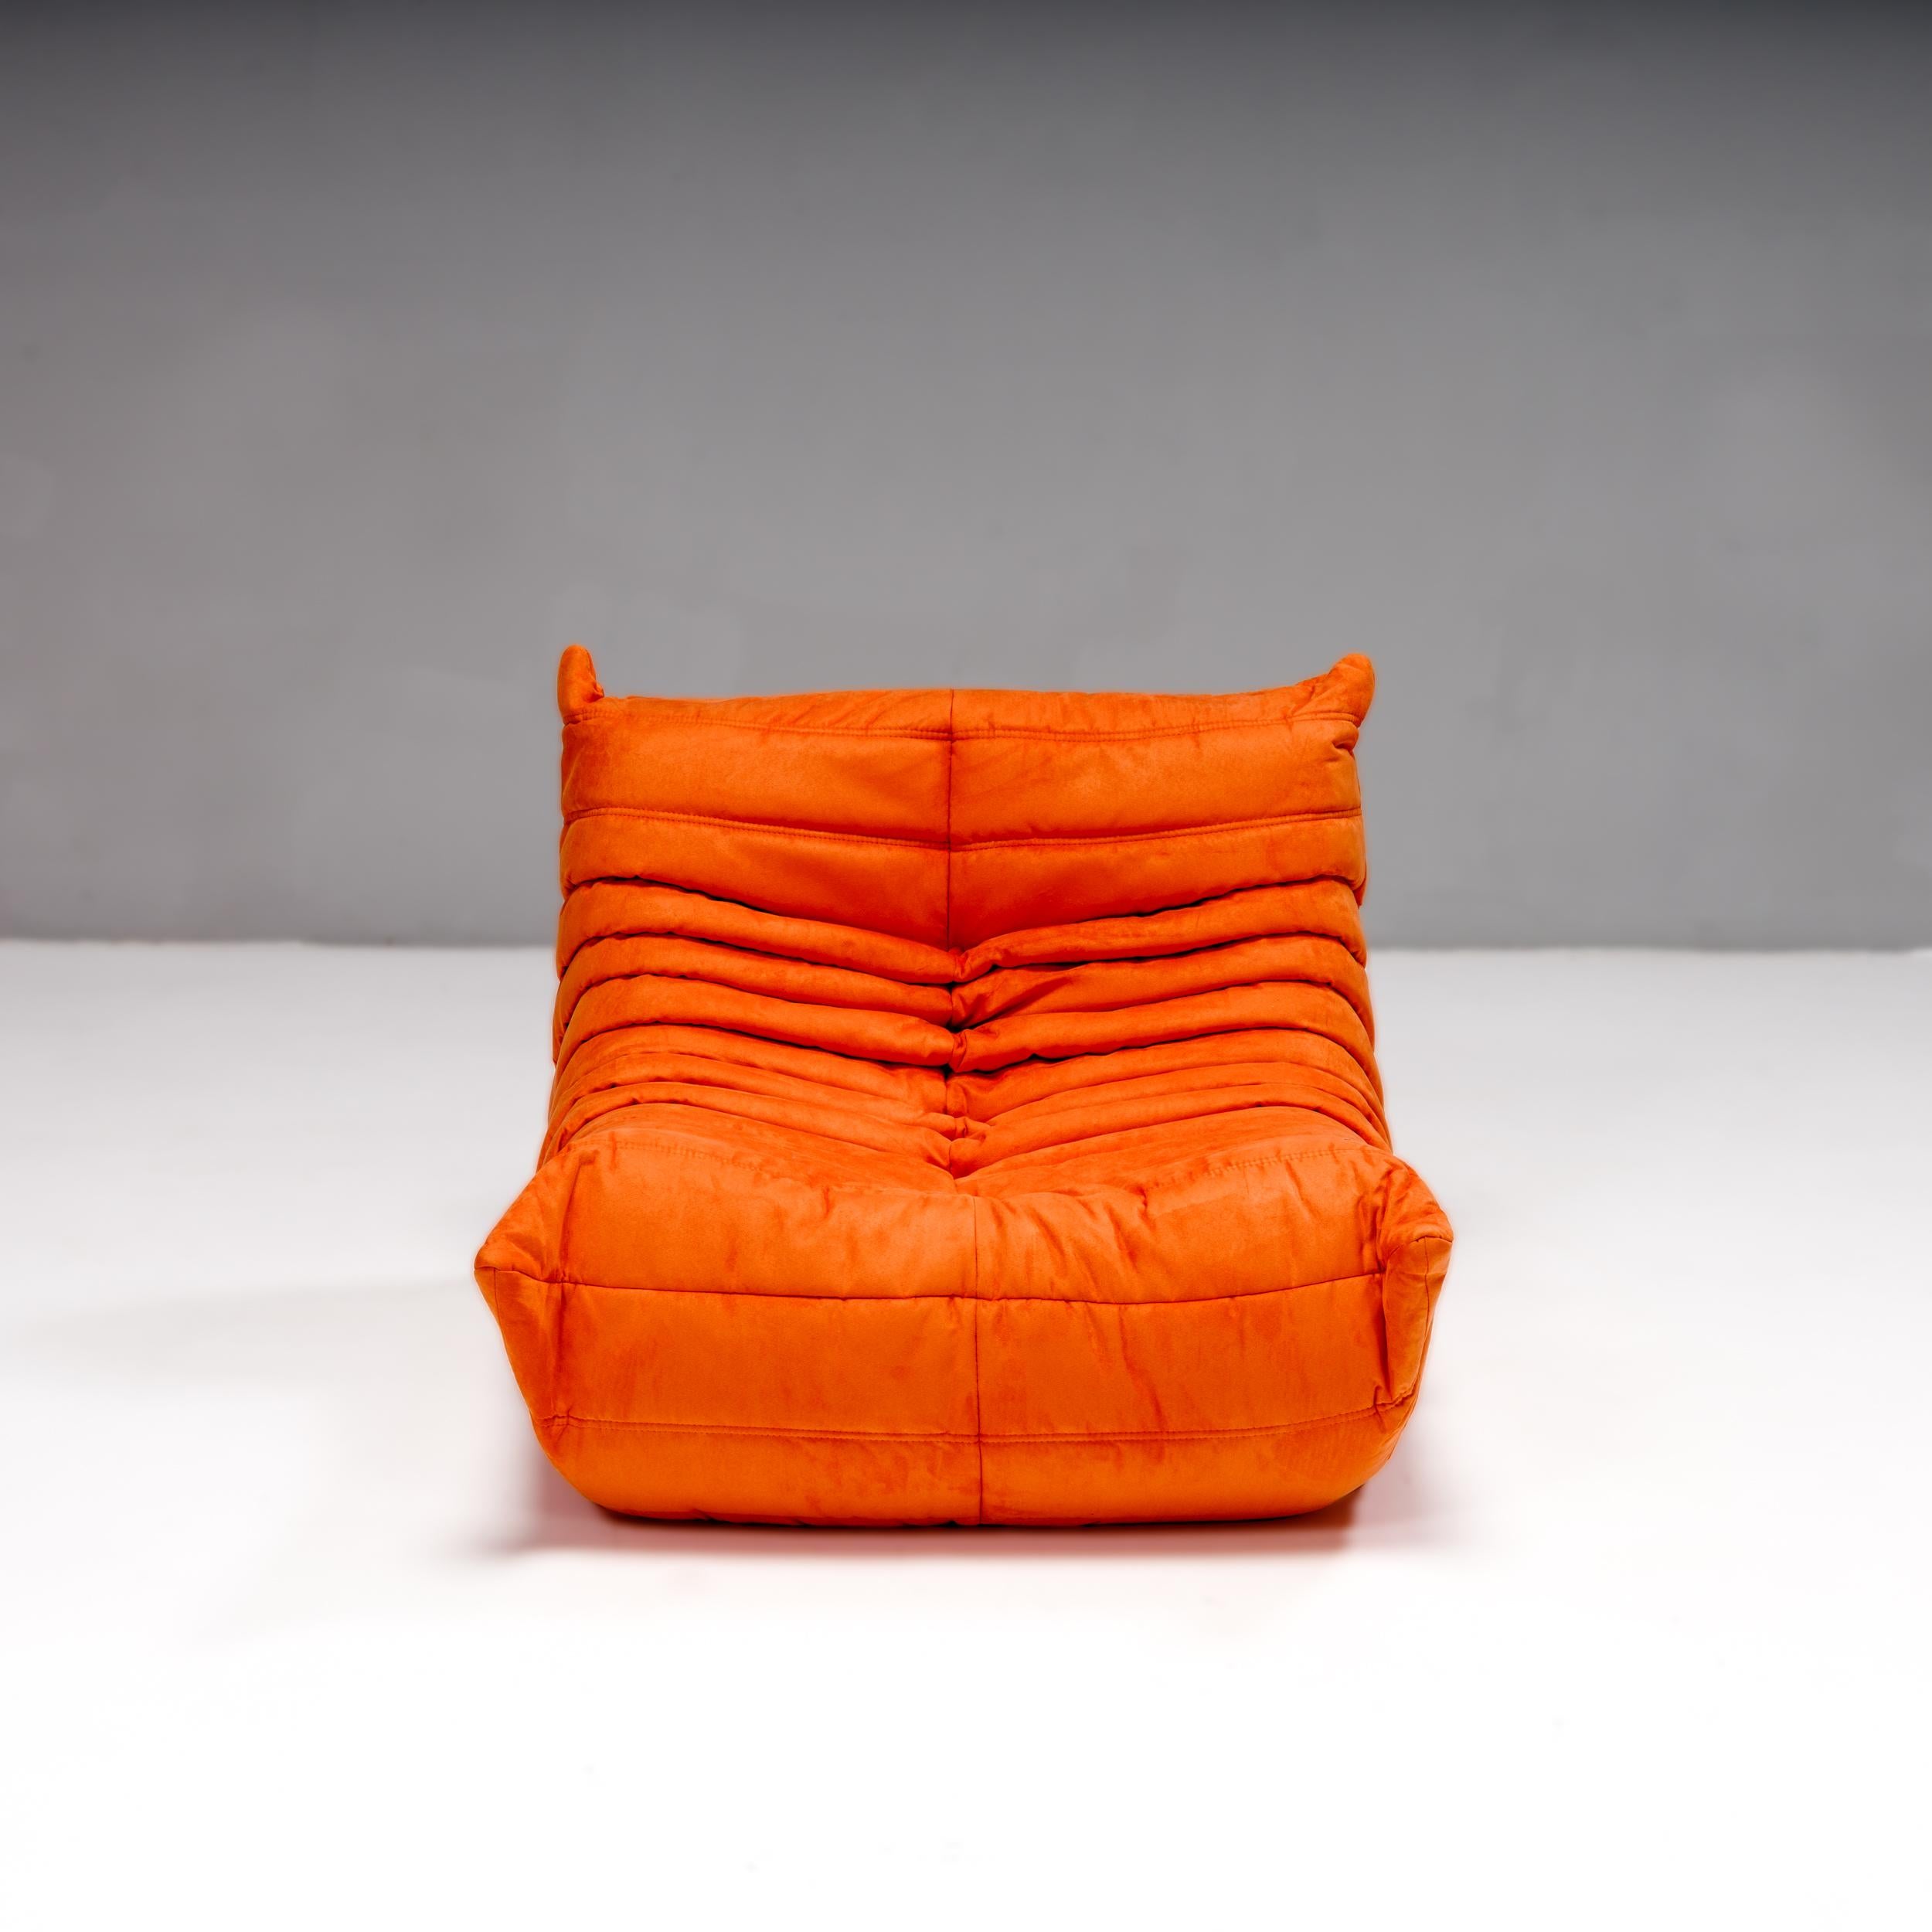 Das ikonische Sofa Togo, ursprünglich 1973 von Michel Ducaroy für Ligne Roset entworfen, ist ein Designklassiker aus der Mitte des Jahrhunderts geworden.

Dieser Kaminsessel und Fußhocker ist unglaublich vielseitig und kann allein oder in